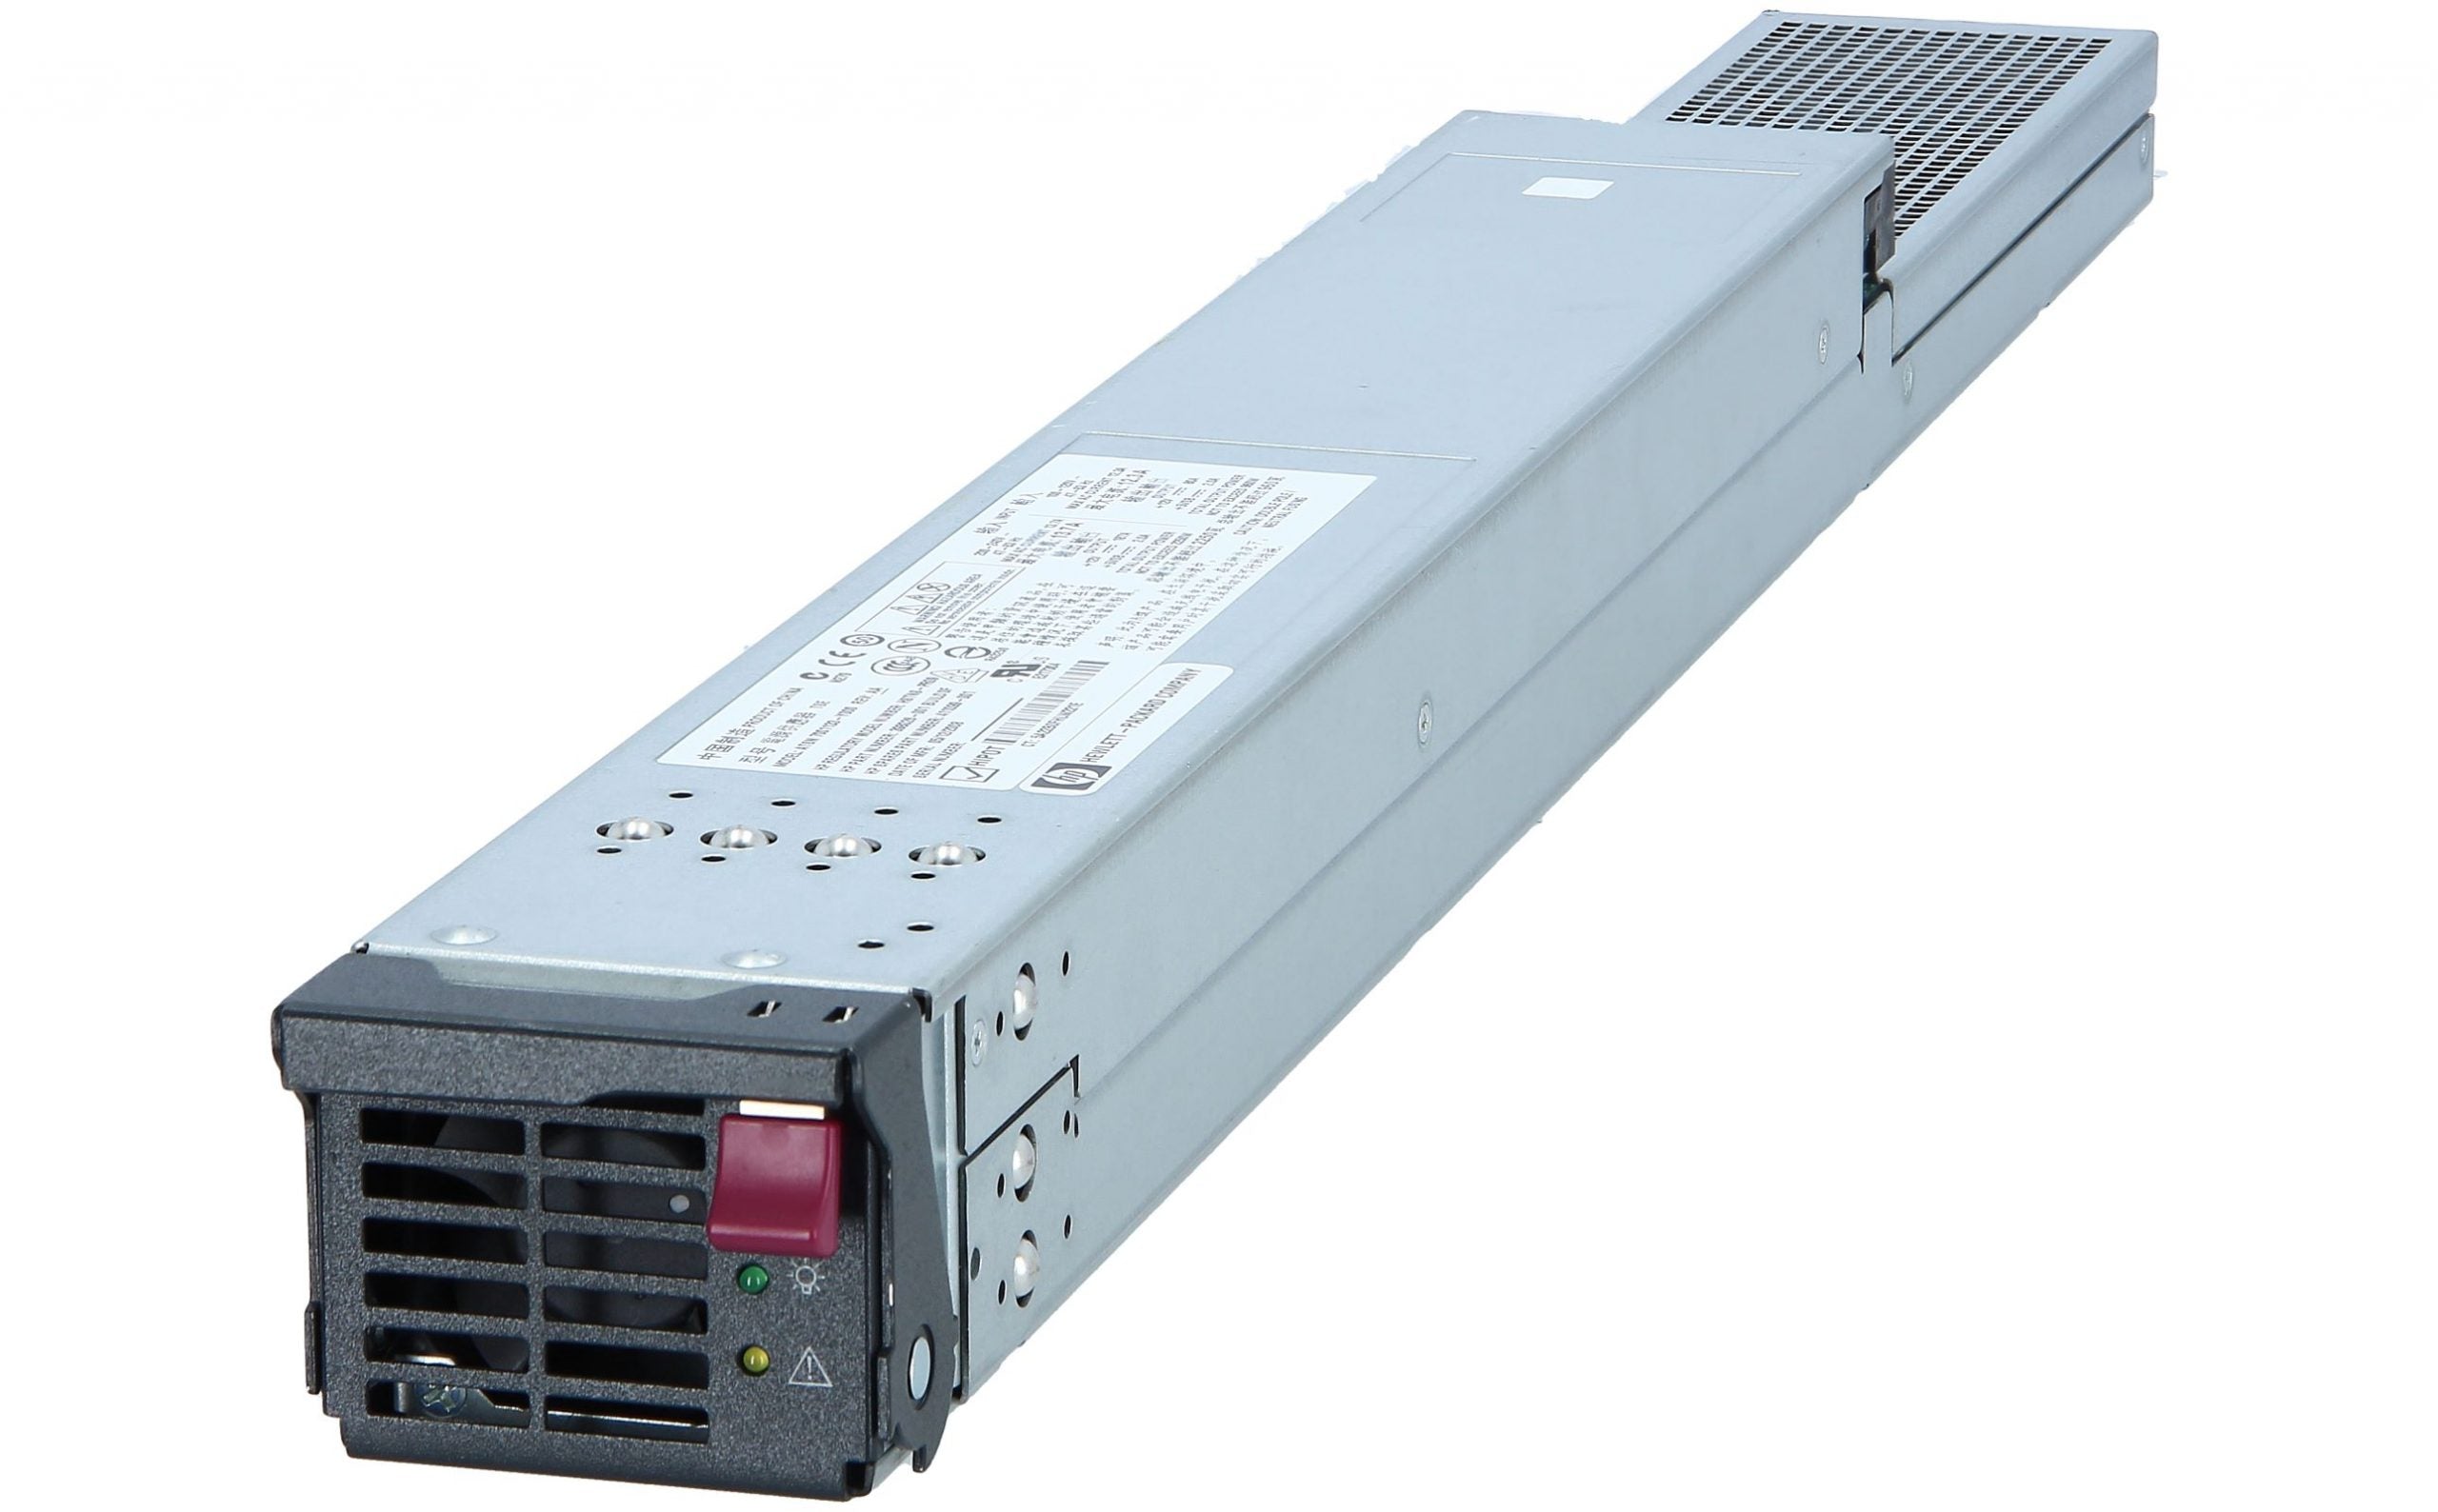 HP 412138-B21 411099-001 BL c7000 Hot Plug Power Supply PSU BLC7000 398026-001